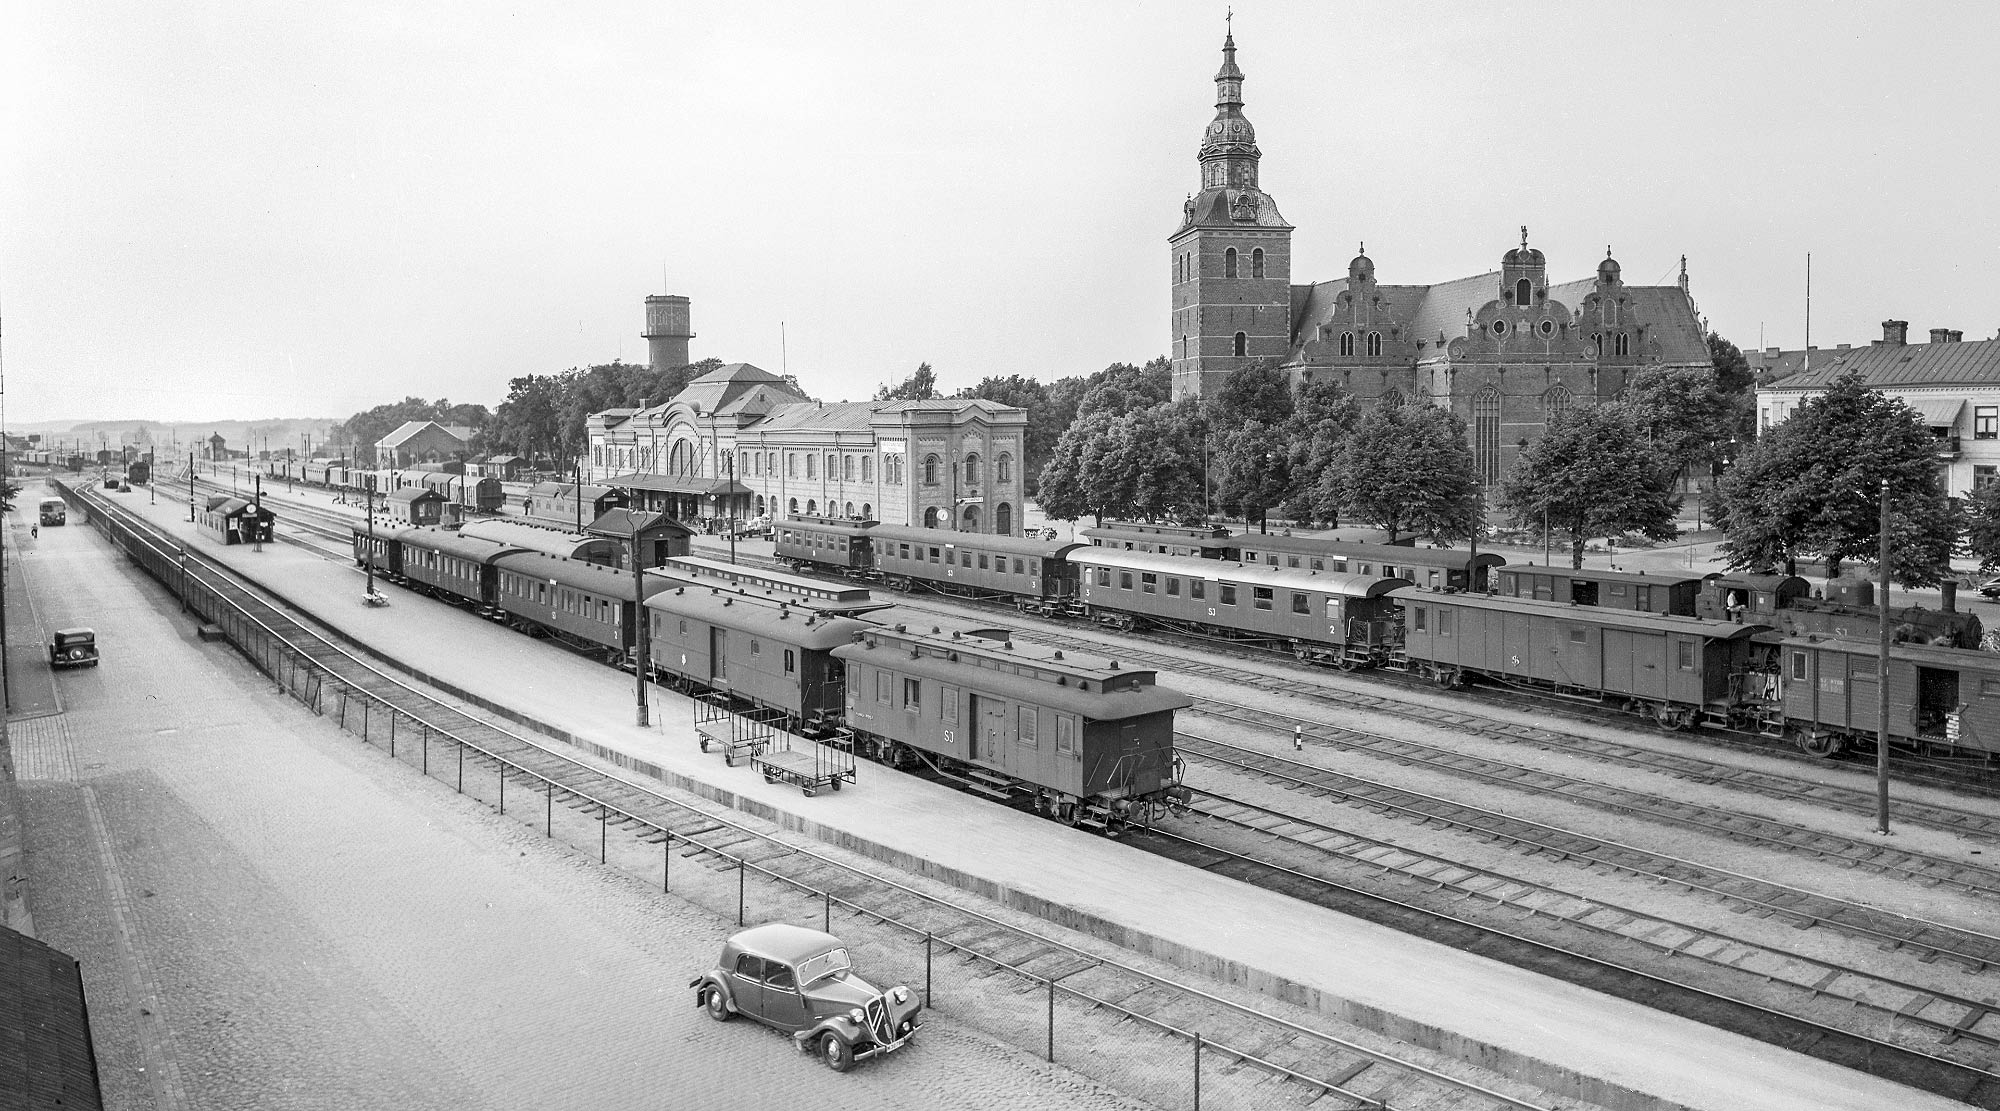 Bild: Stationen i Kristianstad på 1950-talet